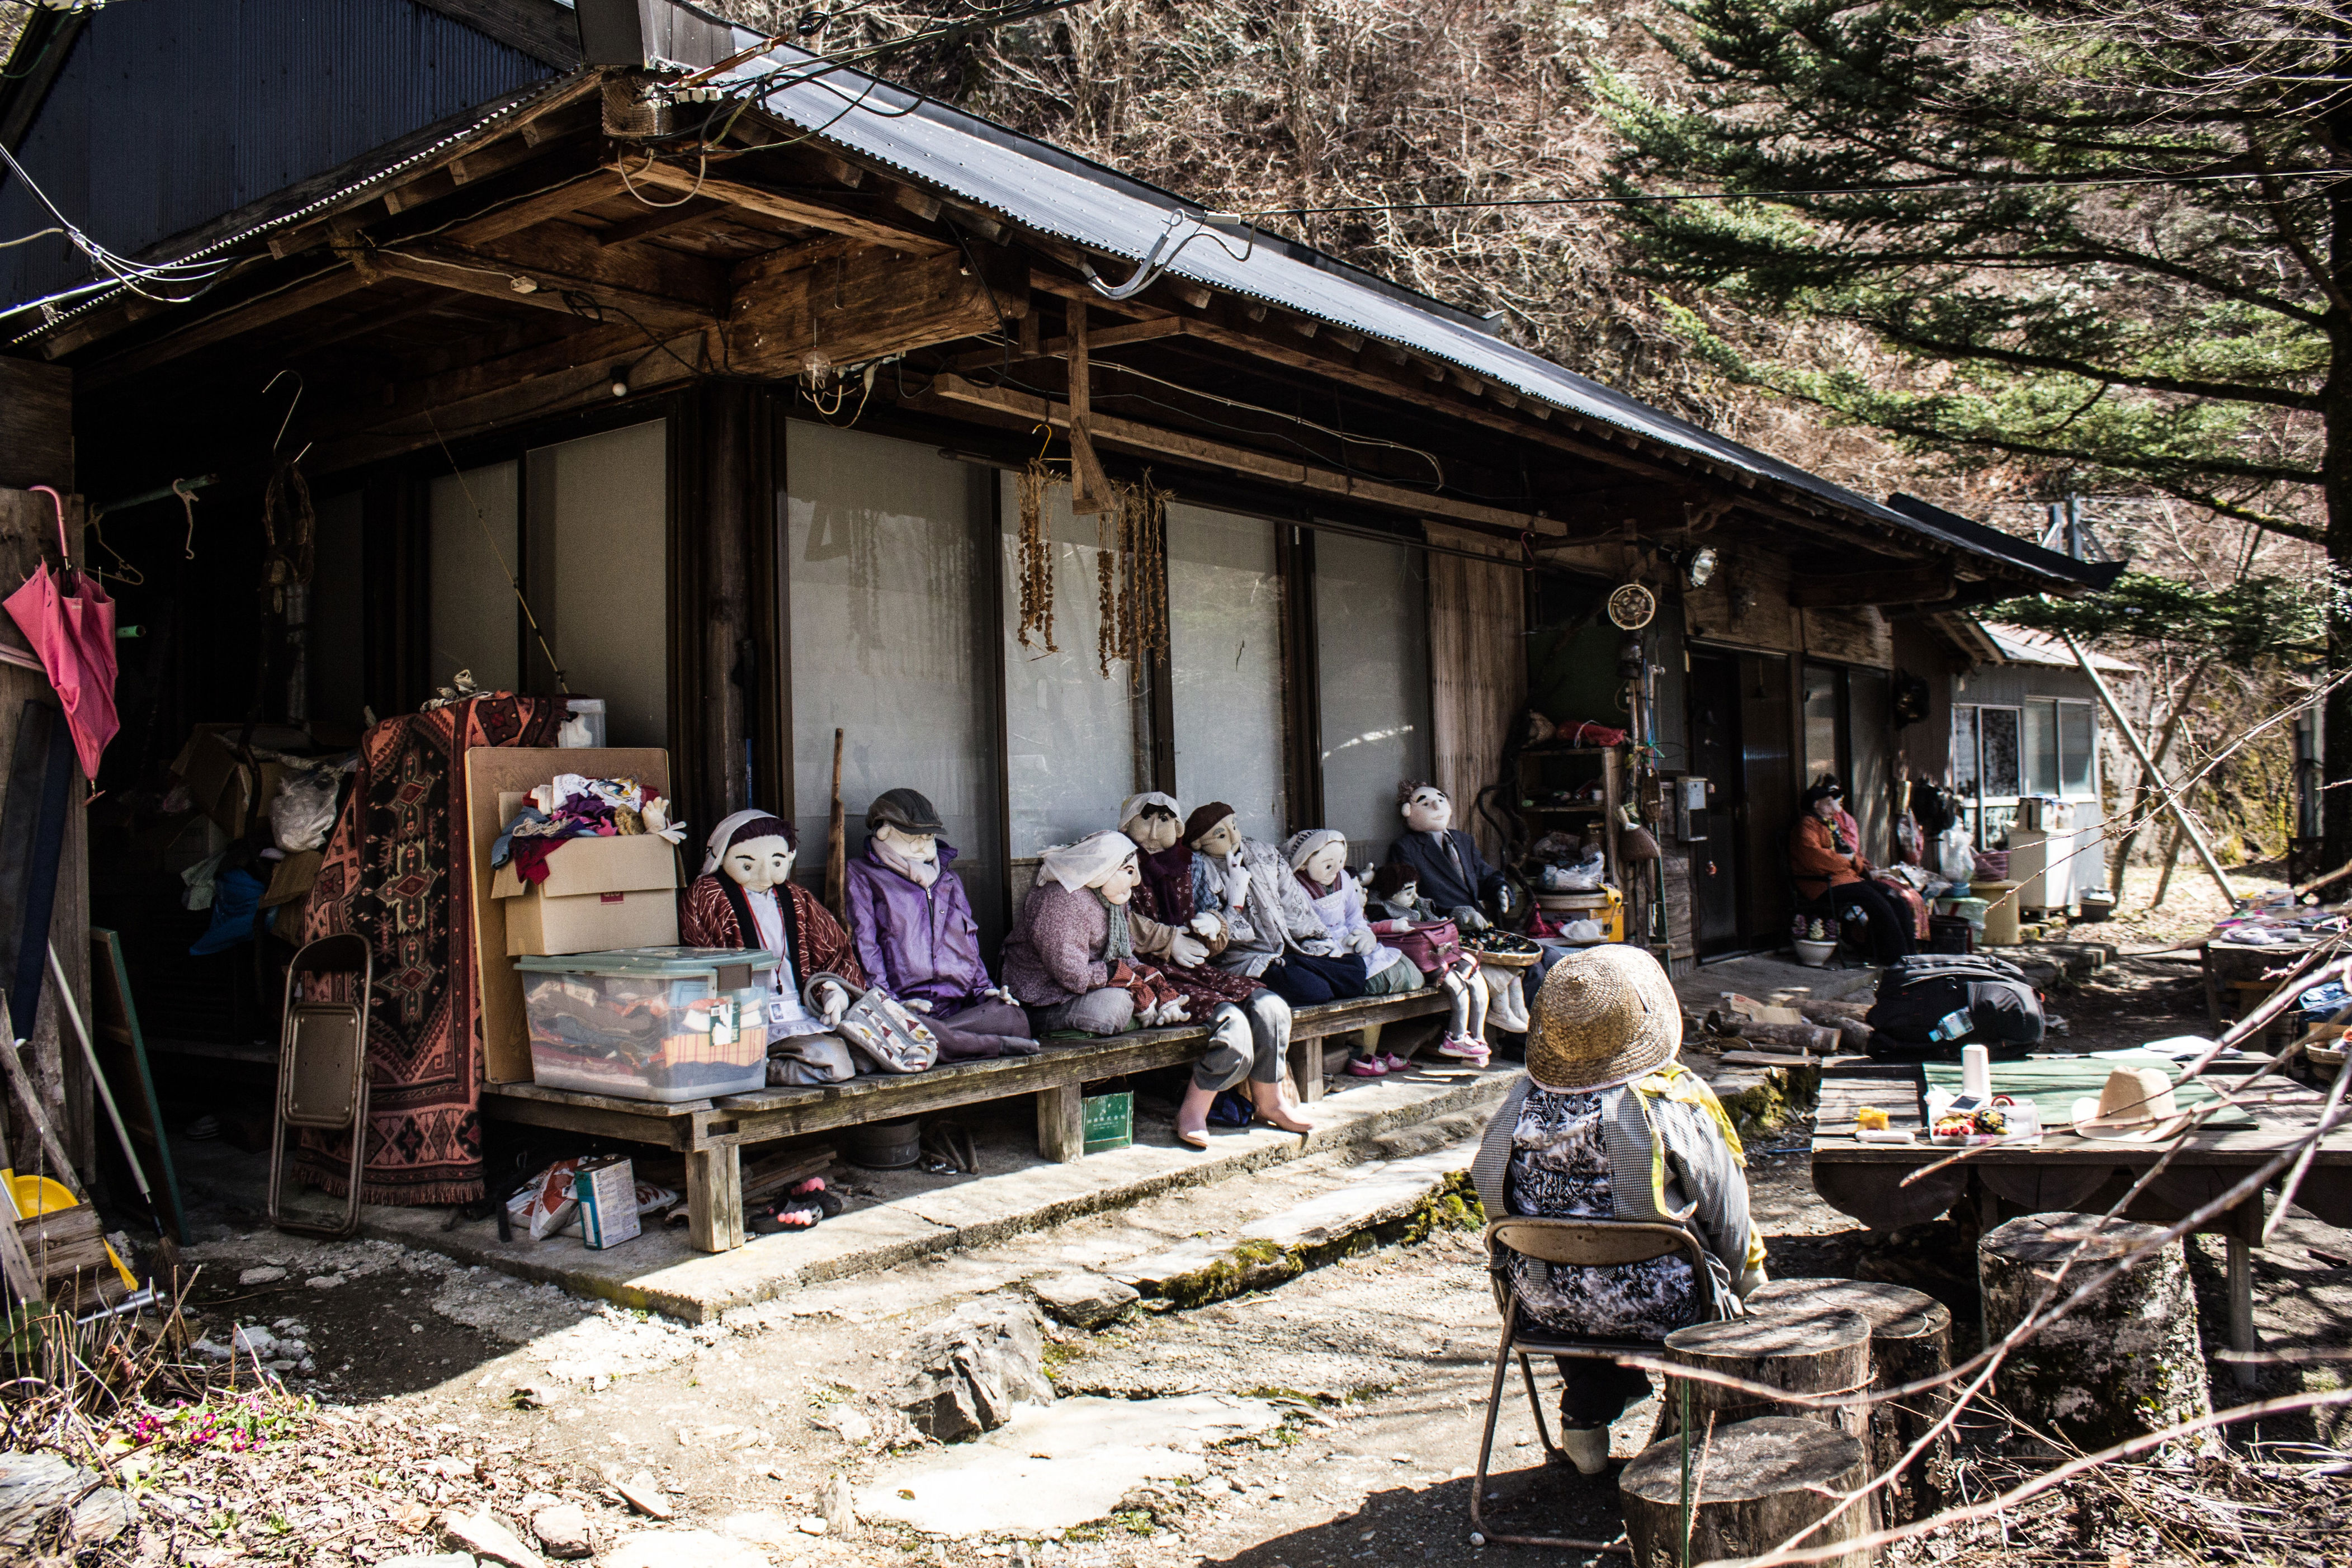 nagoro, l’étrange village abandonné japonais peuplé de poupées